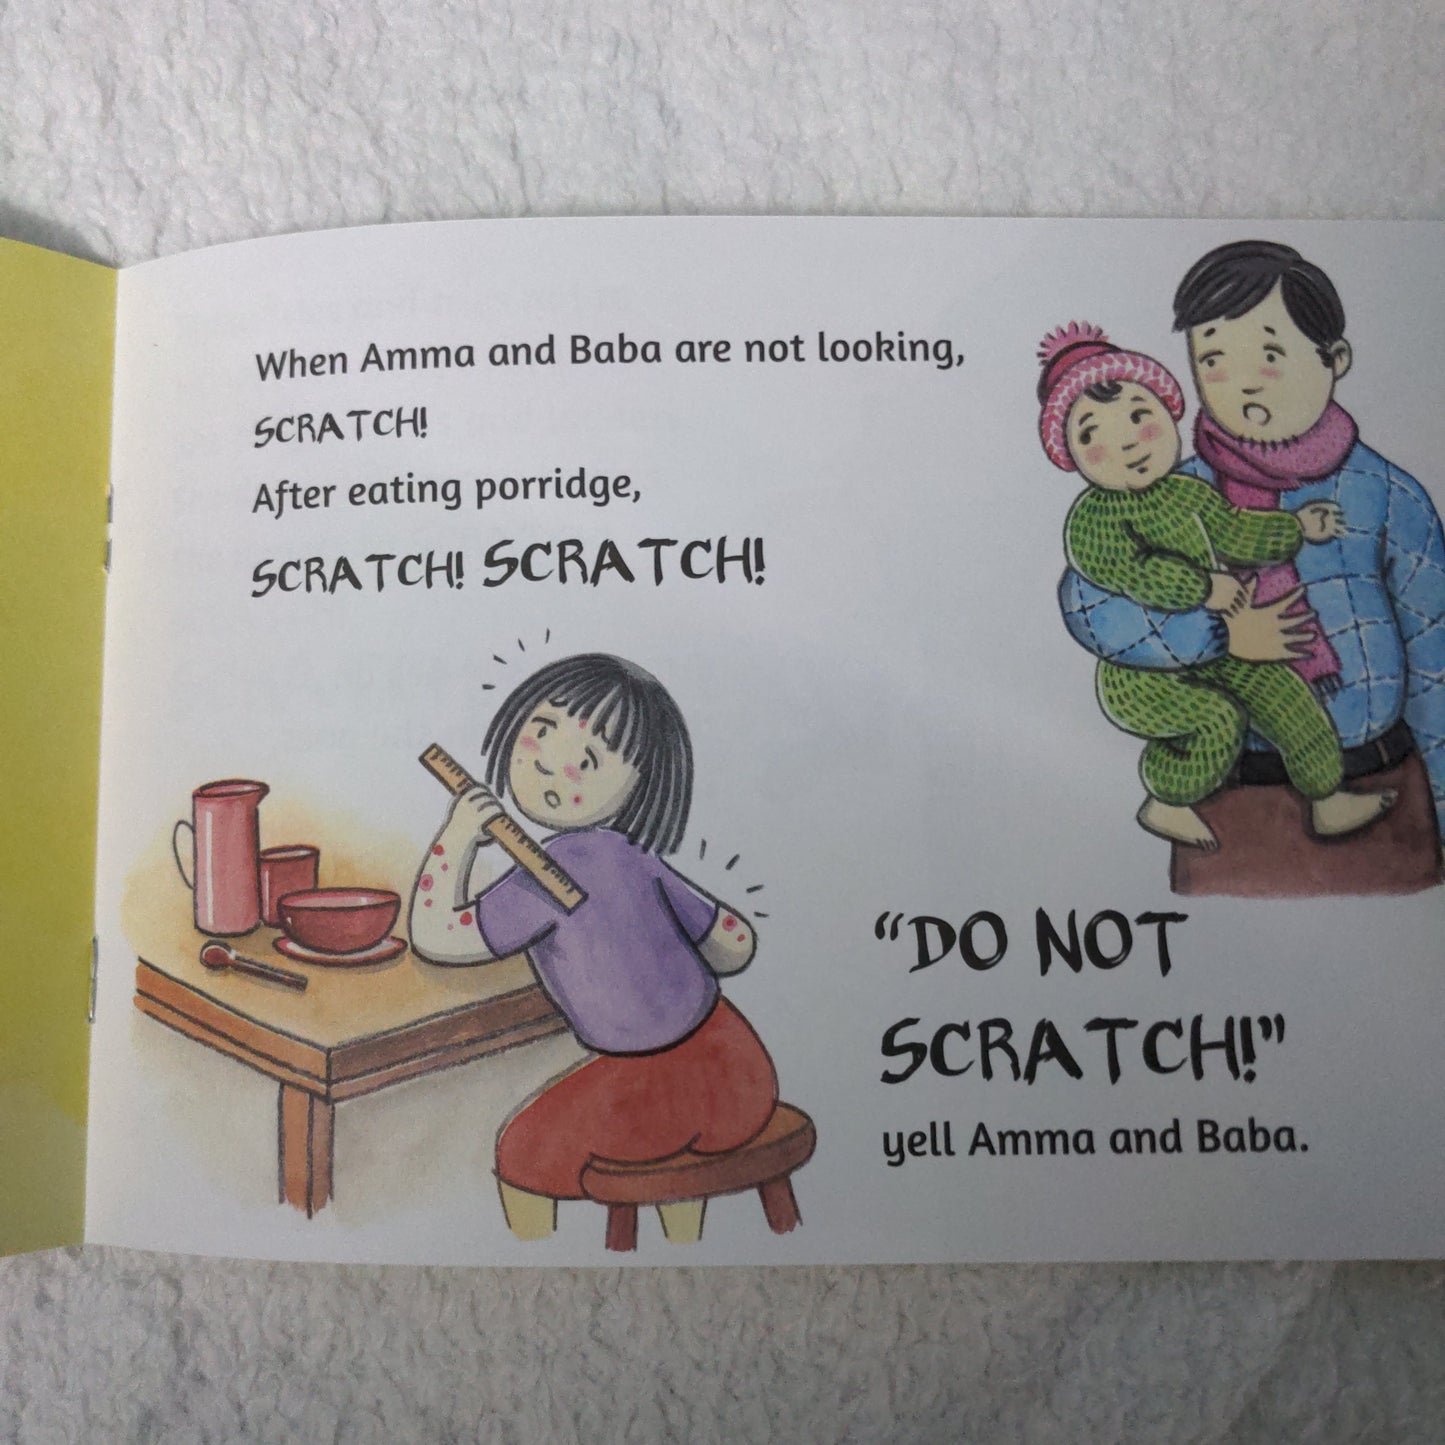 Scratch! Scratch! Scratch! - English